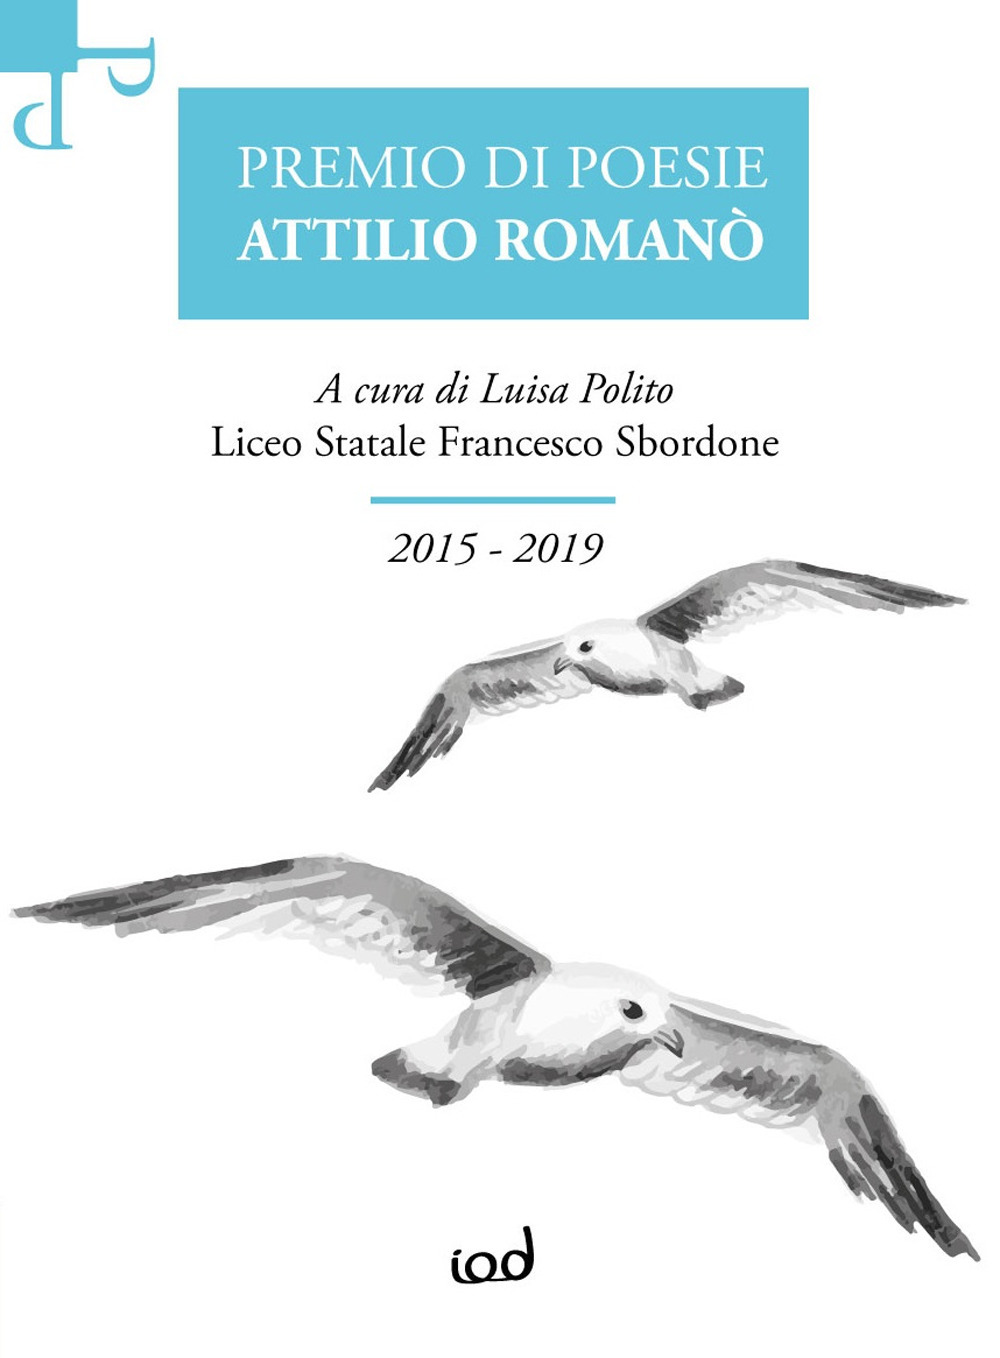 Premio di poesie Attilio Romanò